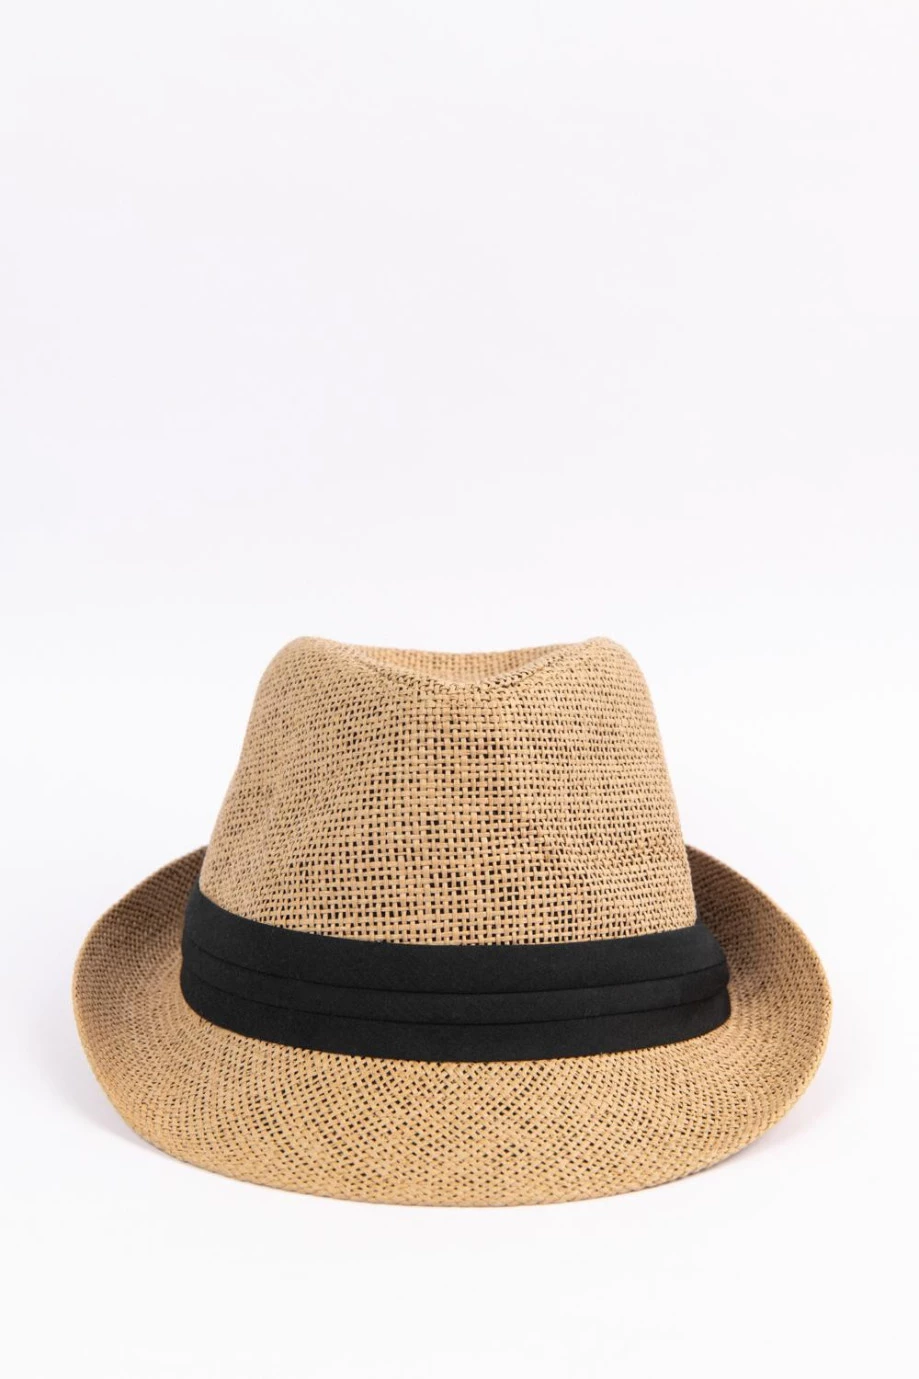 Sombrero Panamá kaky claro con cinta negra y ala corta